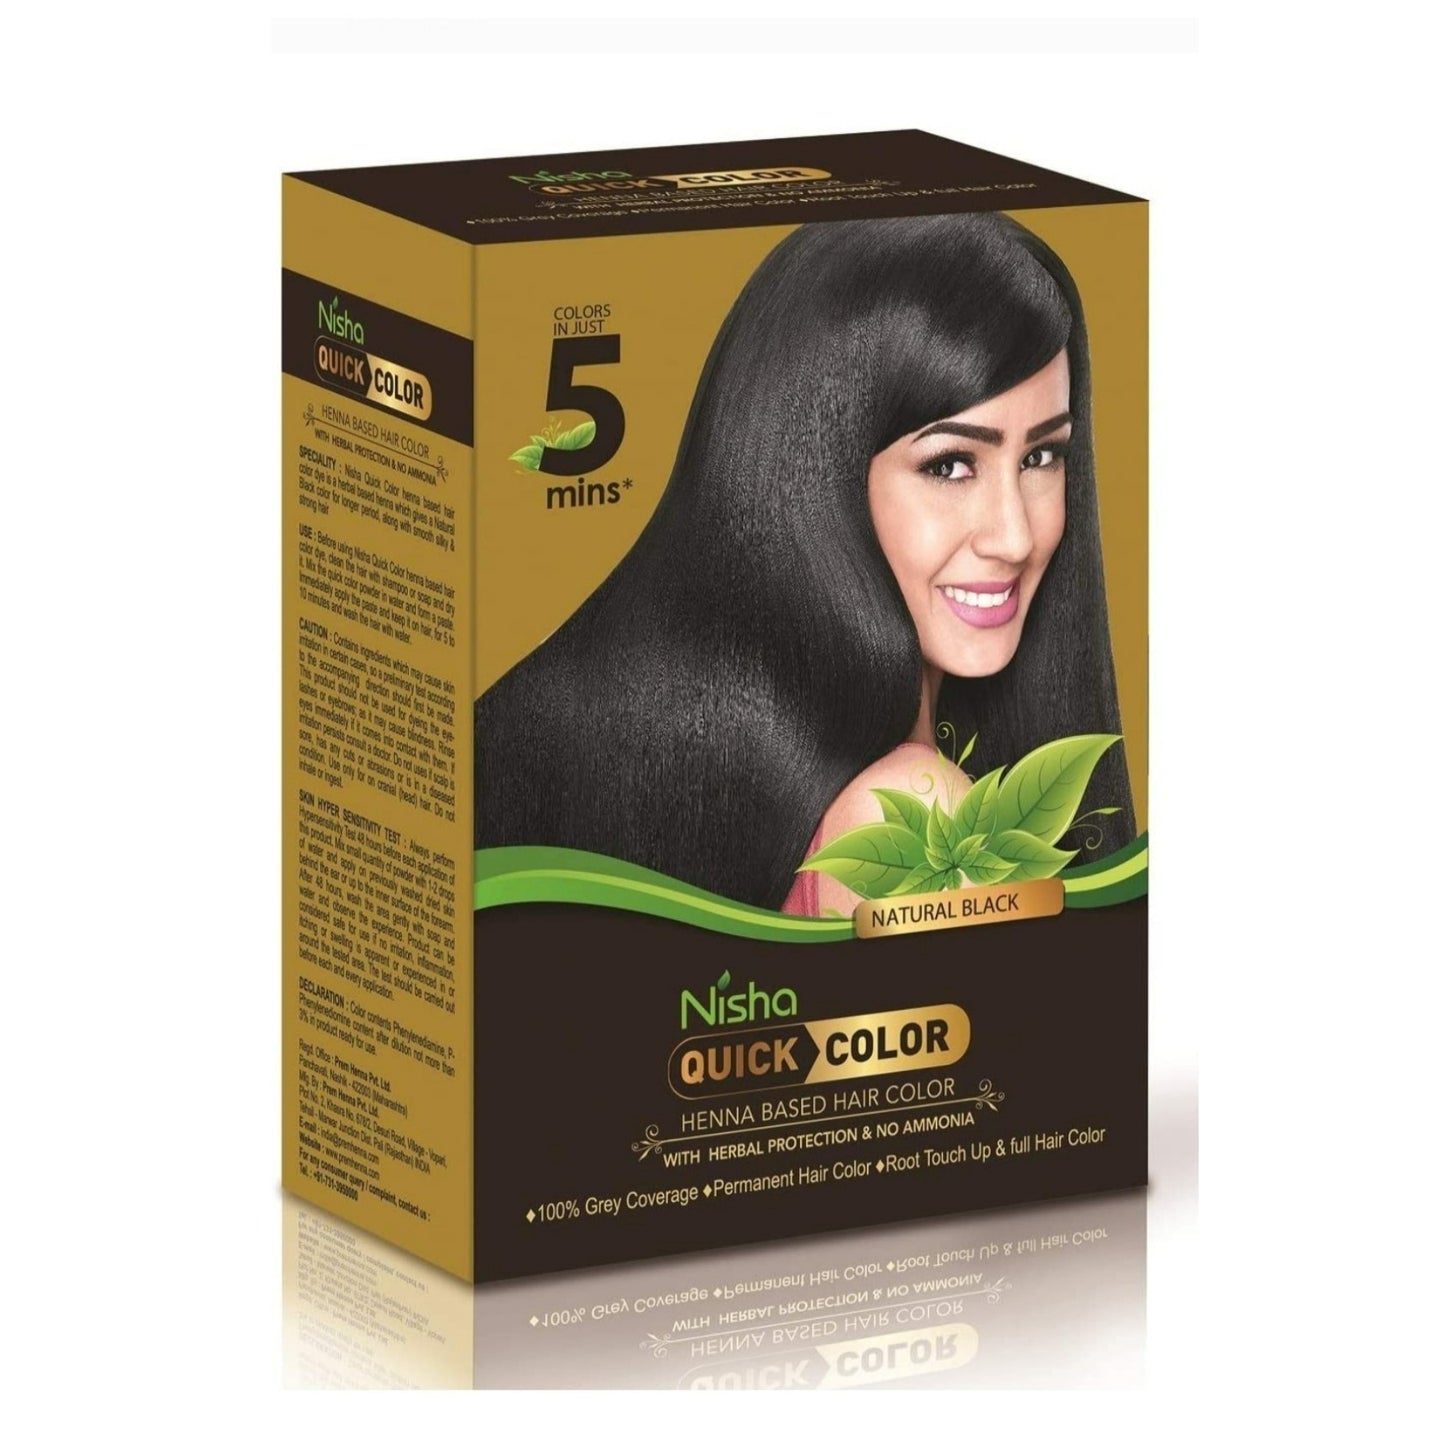 Nisha Natural Black Henna Hair Color 5 Minutes Quick Henna Based Hair Color Natural Black Hair Dye For Men And Women Henna Black Hair Dye